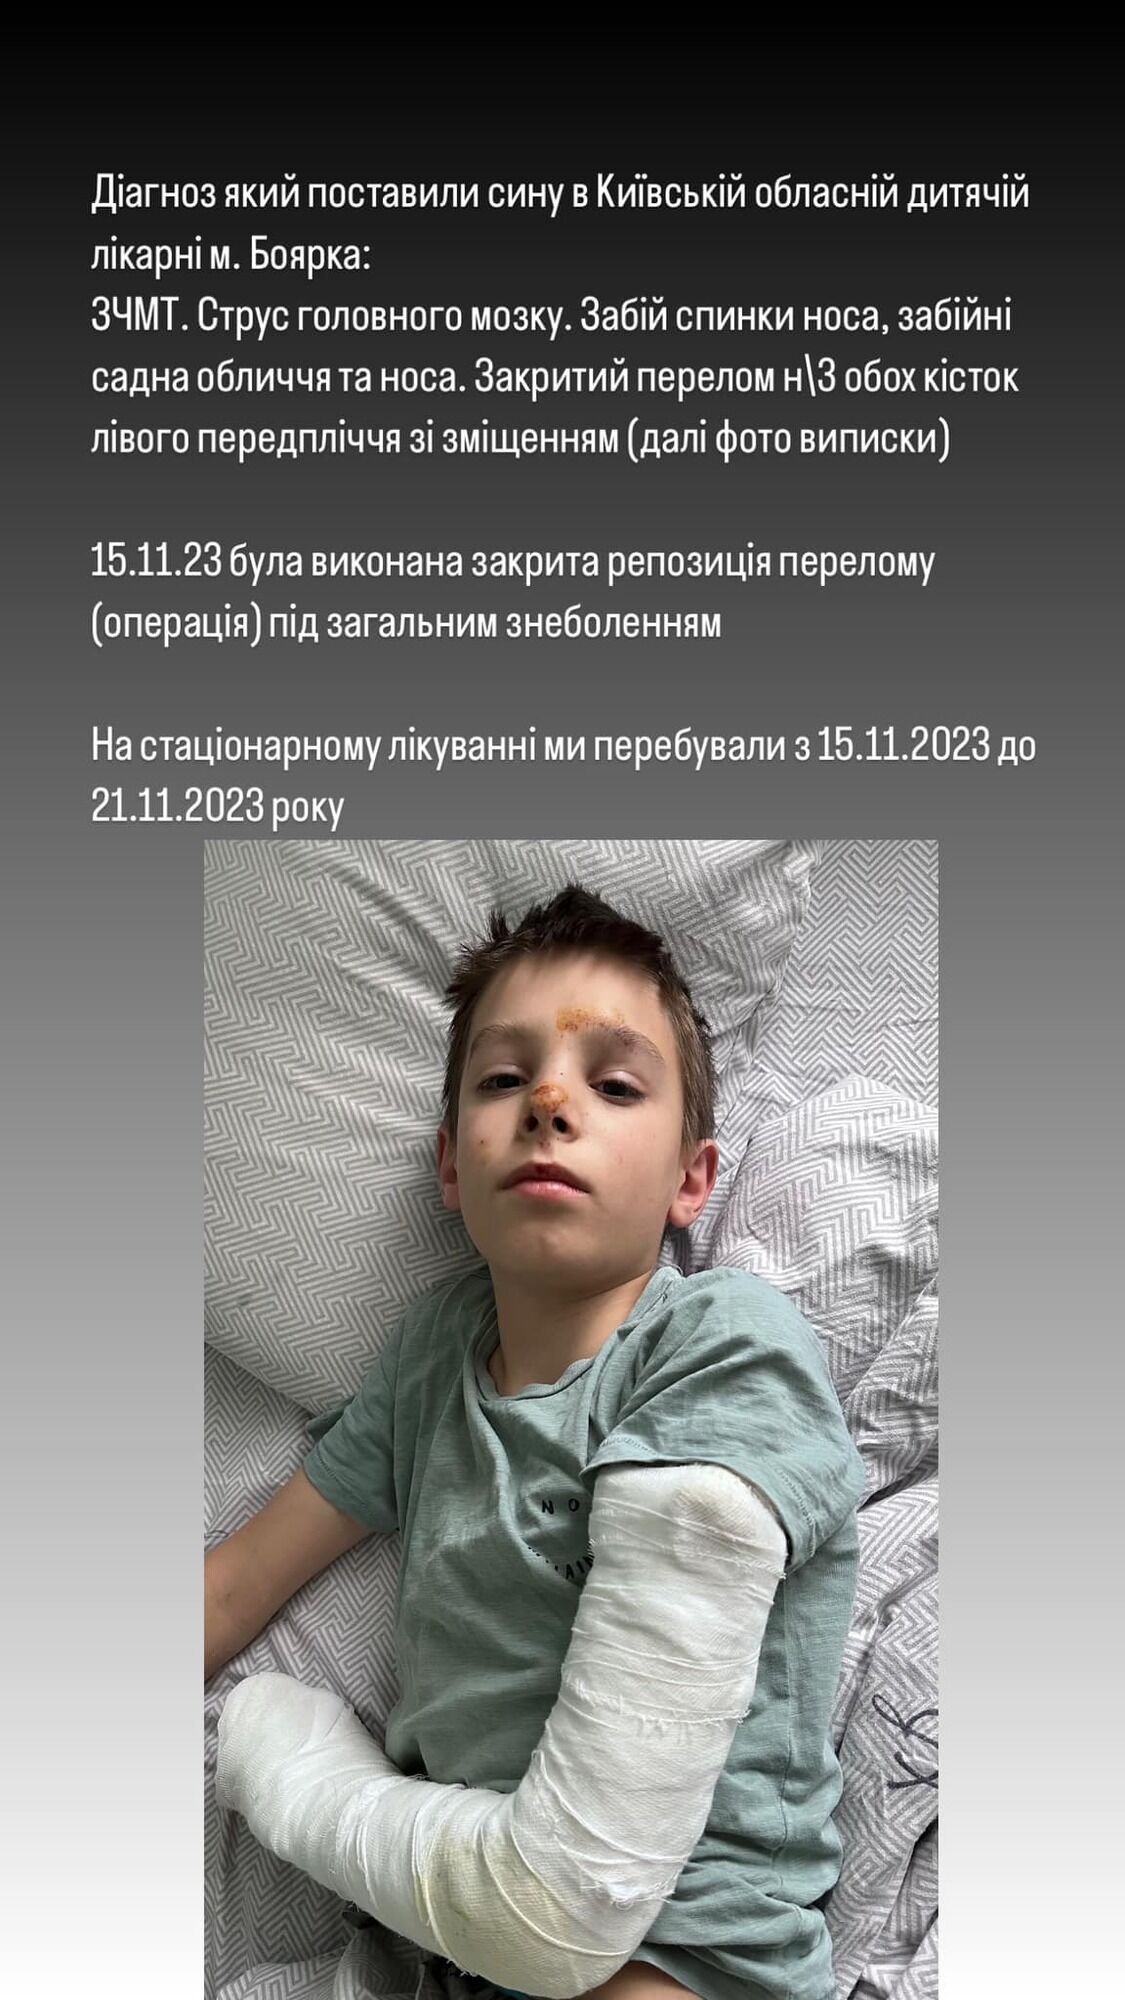 В гимназии Василькова под Киевом мальчик столкнул одноклассника с высоты: ребенок получил травму головы и перелом руки